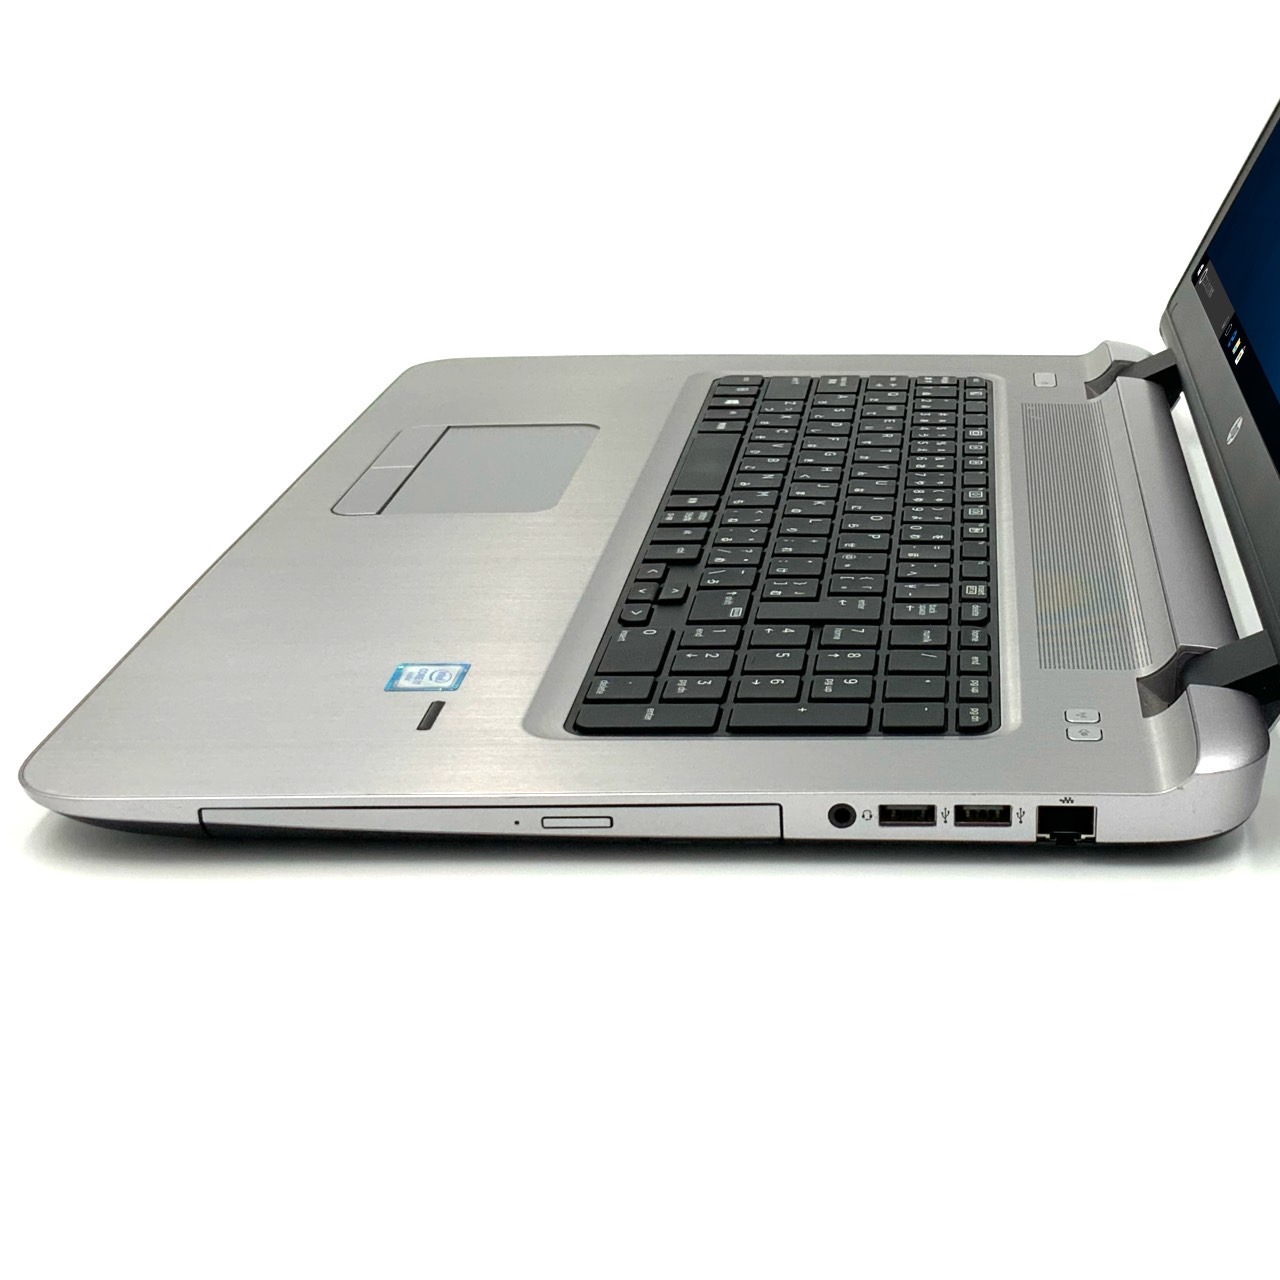 【楽天市場】【大画面17.3インチノート】 【スタイリッシュノート】 HP ProBook 470 G3 Notebook PC 第6世代